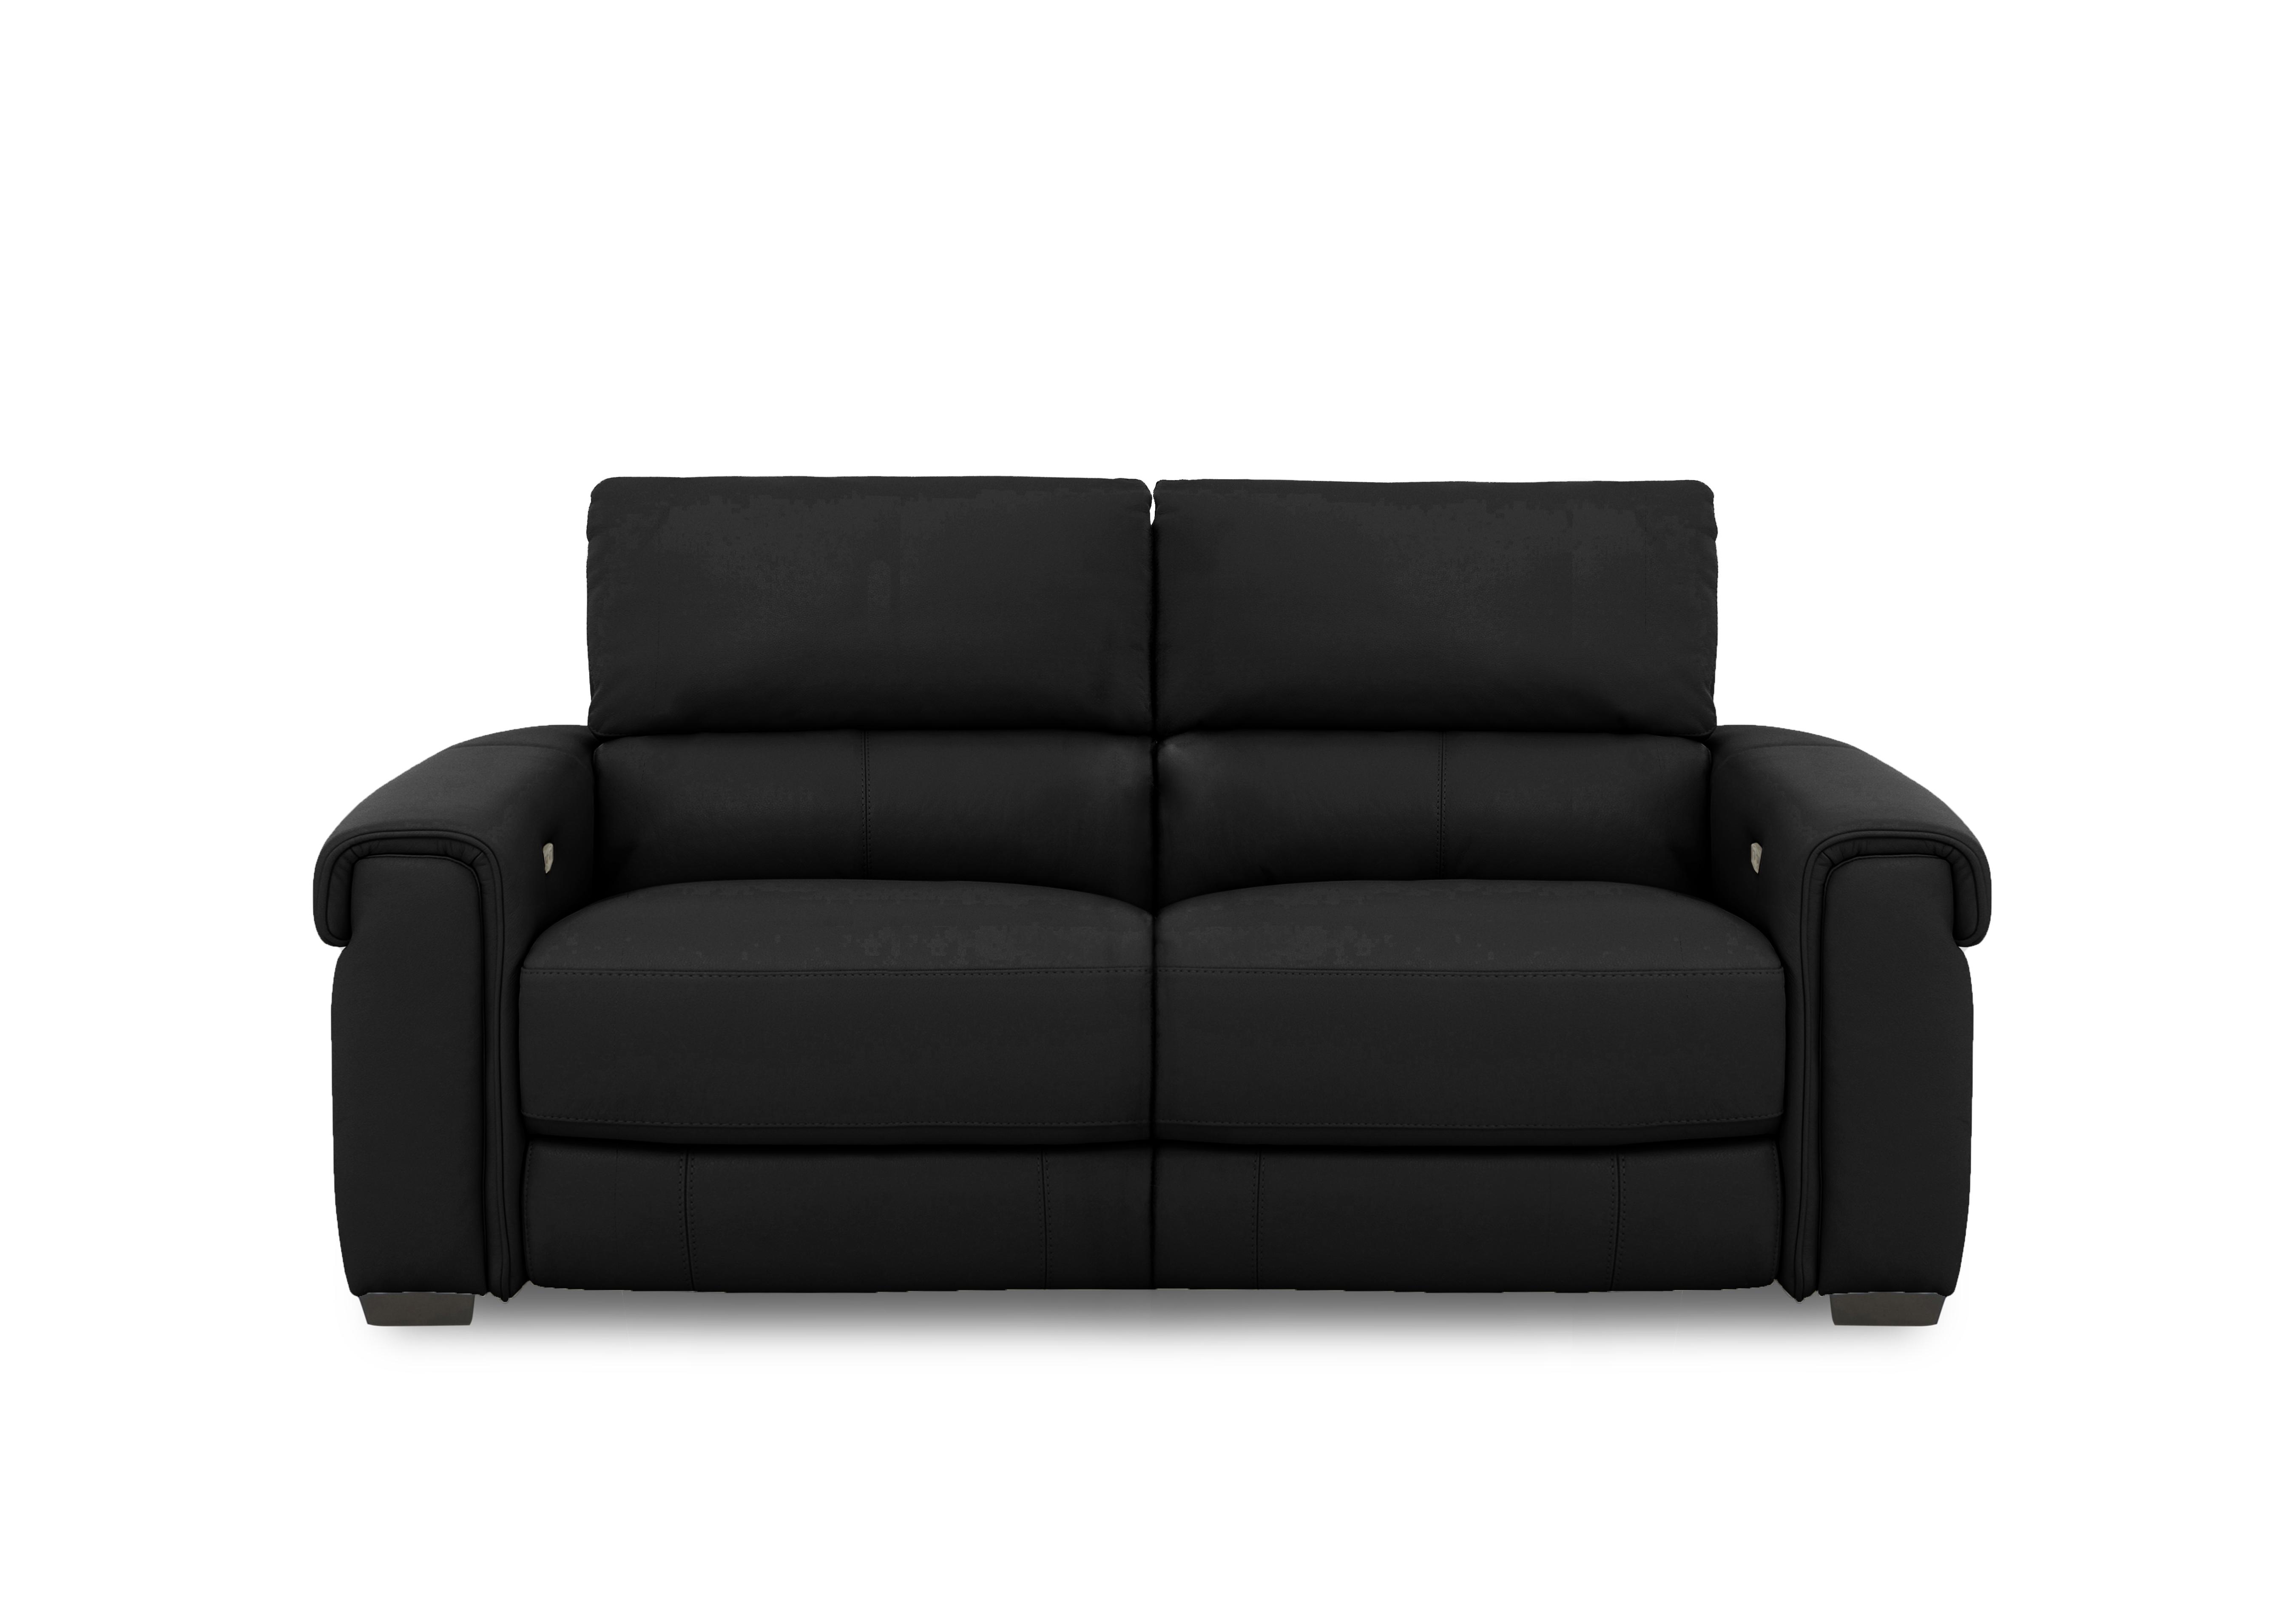 Nixon Leather 3 Seater Sofa in An-671b Black on Furniture Village